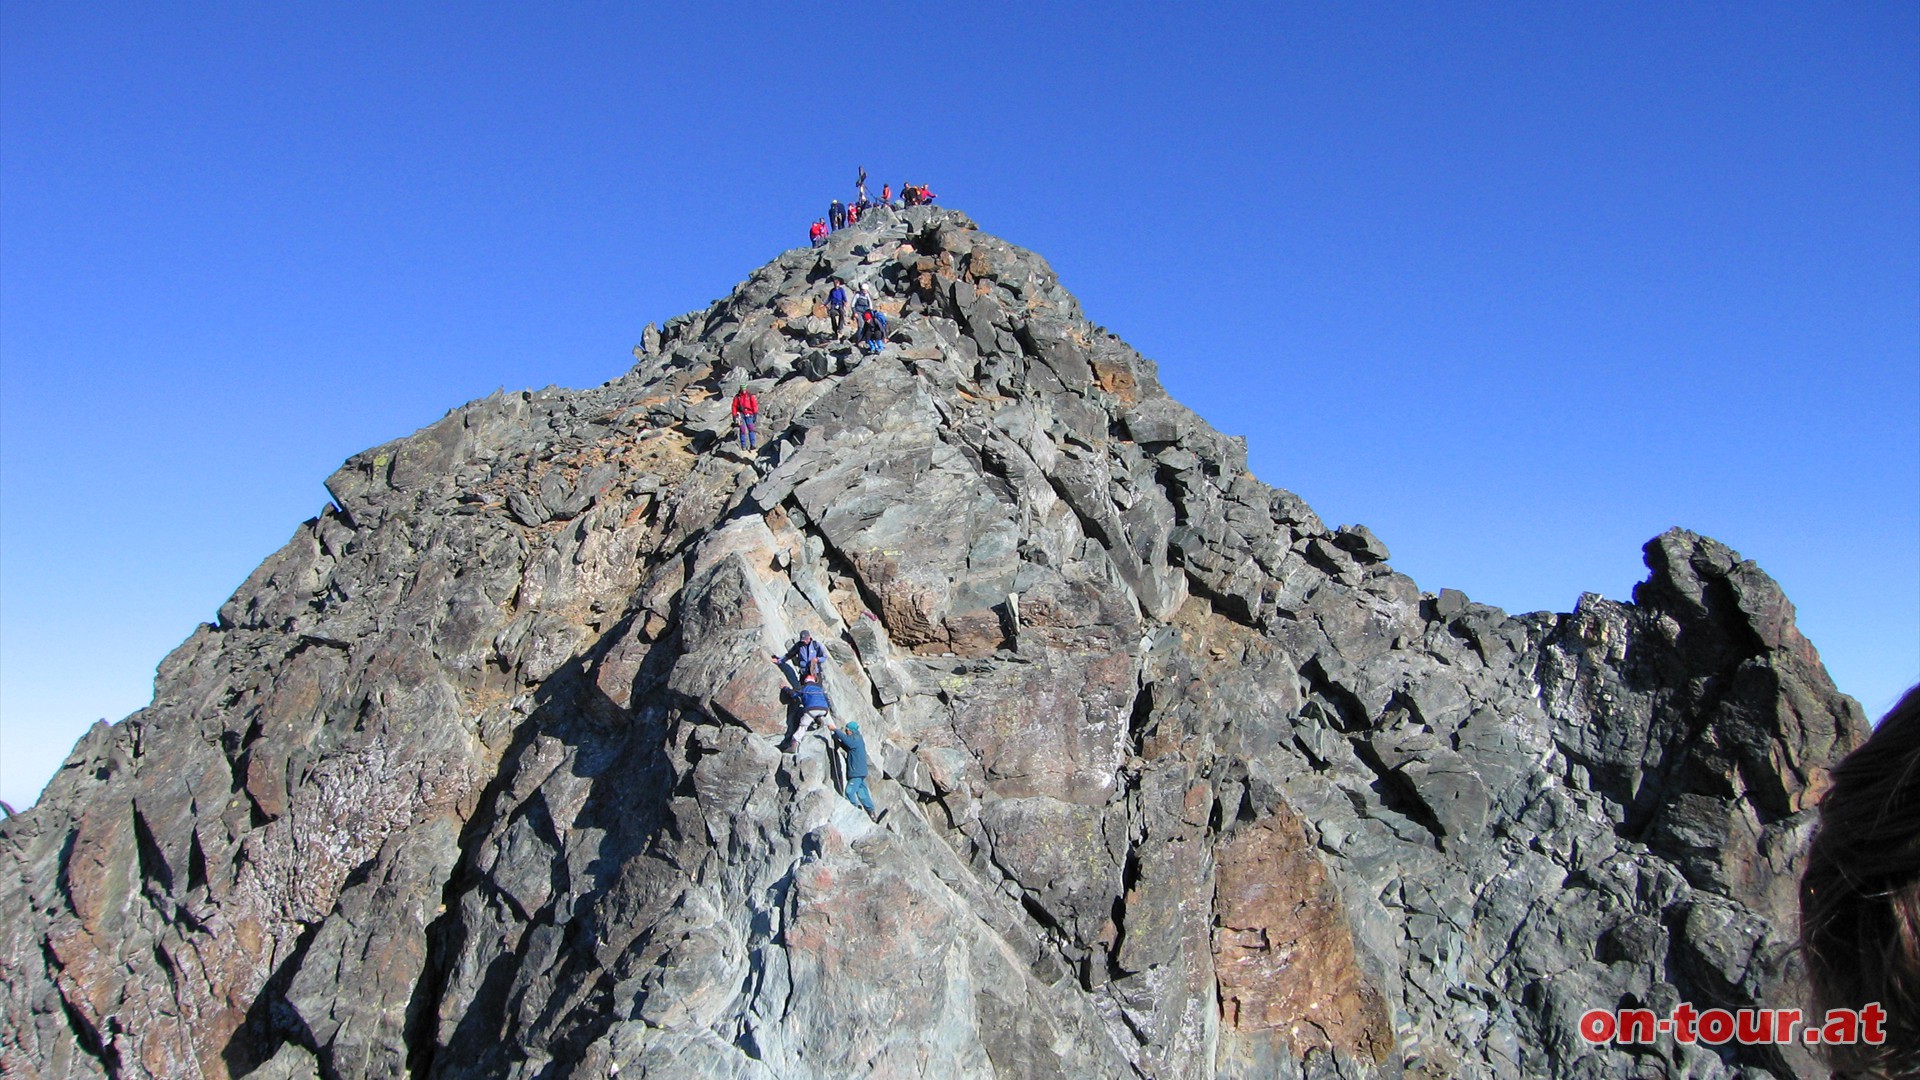 Der Gipfel ist bereits greifbar nahe, doch davor ist noch der Abstieg zur Glocknerscharte zu bewältigen. Die Fixseile sind hilfreich. Die Scharte ist über einen schmalen Fußweg zu begehen. Rechts führt die Pallavicini-Rinne 1200 Meter steilst hinunter und links die Südrinne mit 800 Höhenmeter bis zum Ködnitzkees.